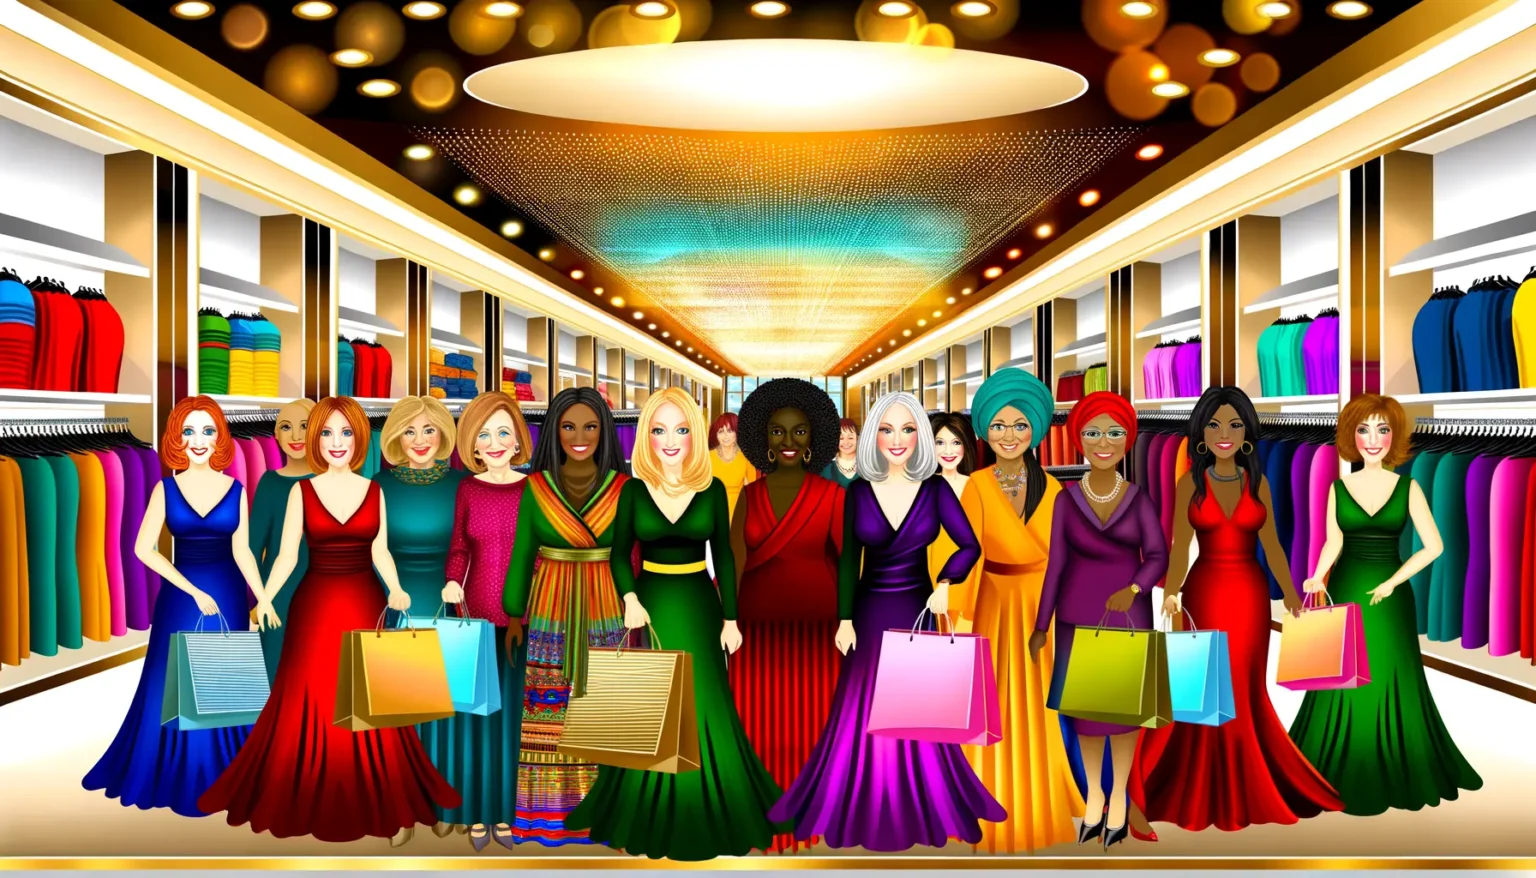 Eine Gruppe stilisierter und fröhlich lächelnder Frauenfiguren steht nebeneinander in einem Modegeschäft mit bunten Kleidungsstücken auf Kleiderstangen. Die Frauen tragen elegante und farbenfrohe Kleider und halten Einkaufstaschen. Der Hintergrund ist dekoriert mit einer leuchtenden Decke und warmen Lichtern, was eine freundliche und luxuriöse Einkaufsatmosphäre suggeriert.